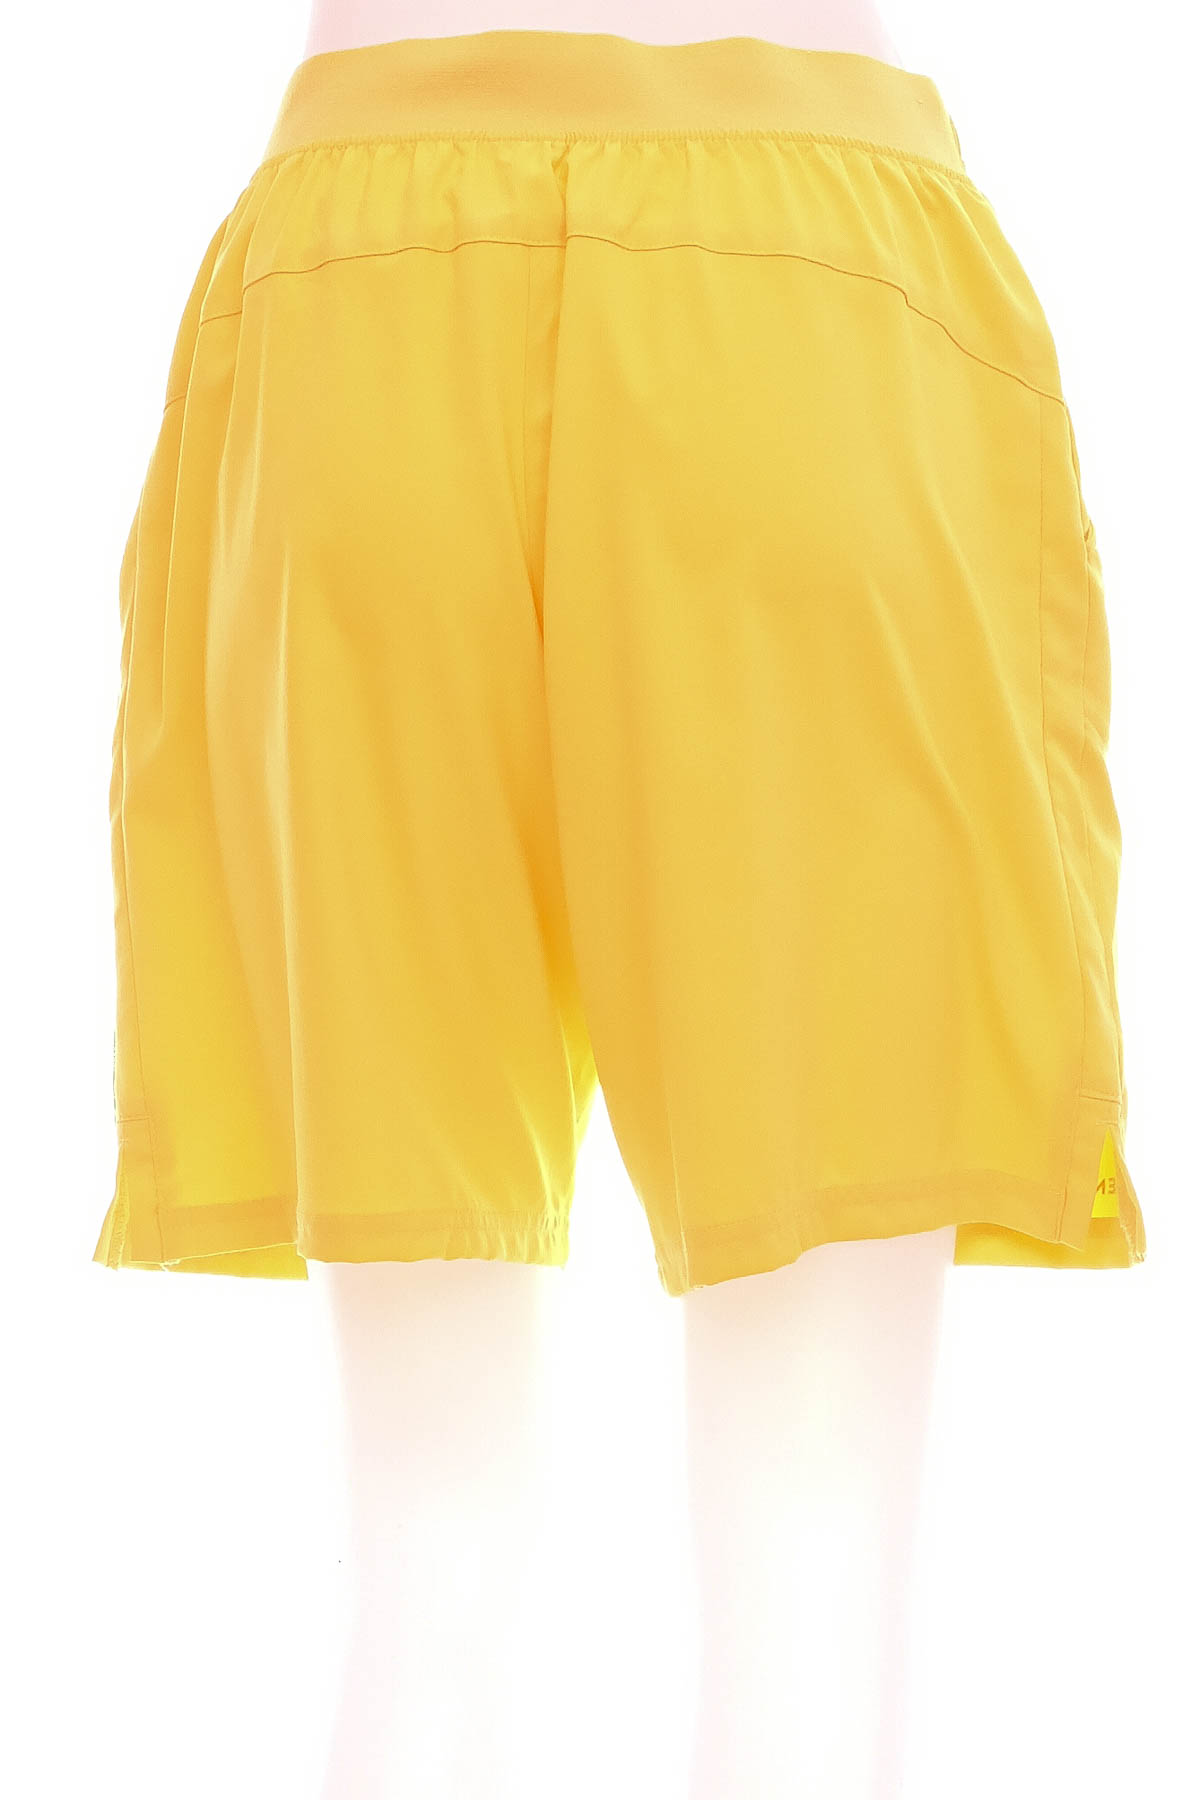 Men's shorts - Artengo - 1